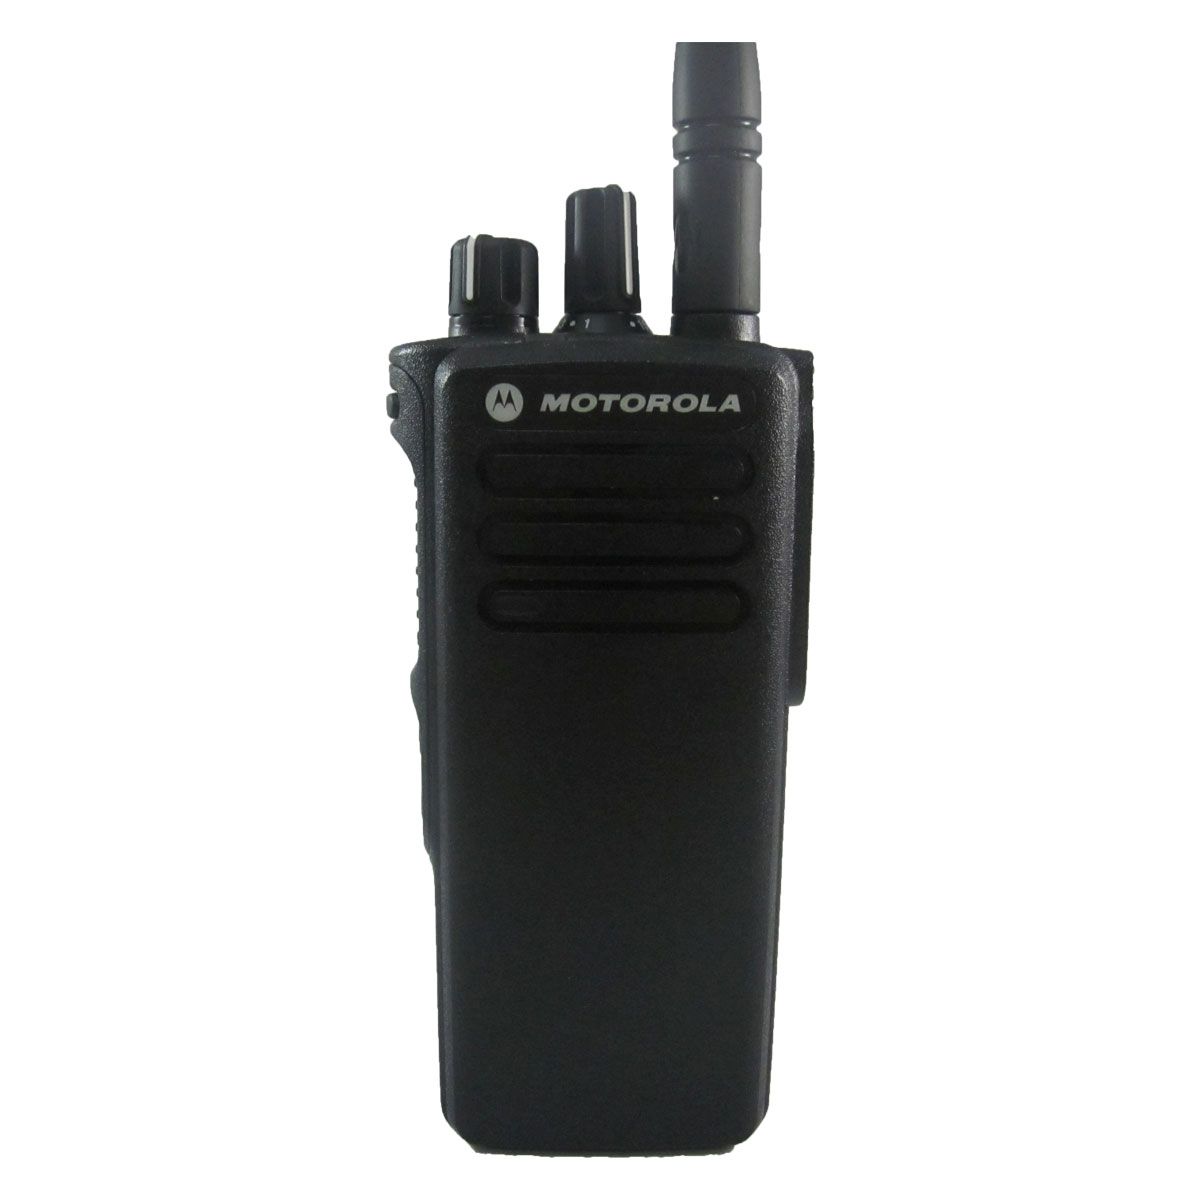 Radio Motorola DGP8050 Digital LAH56JDC9KA1AN VHF 136-174 MHz